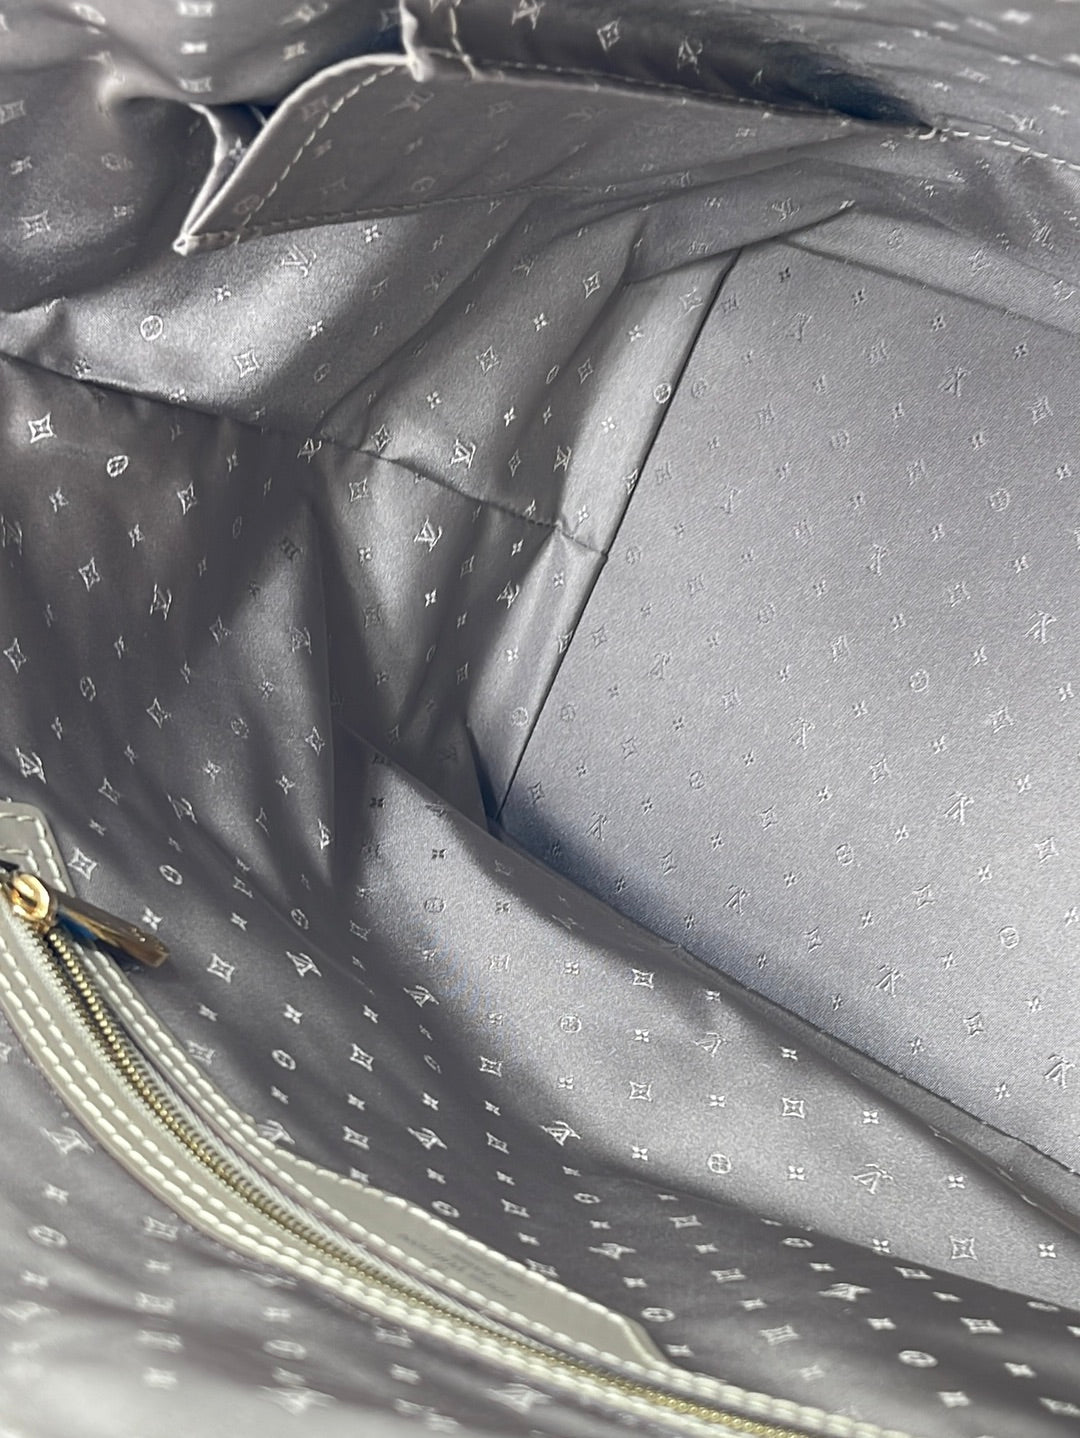 Preloved Louis Vuitton Beige Suhali Lockit MM Shoulder Bag DU1067 060523 $500 OFF